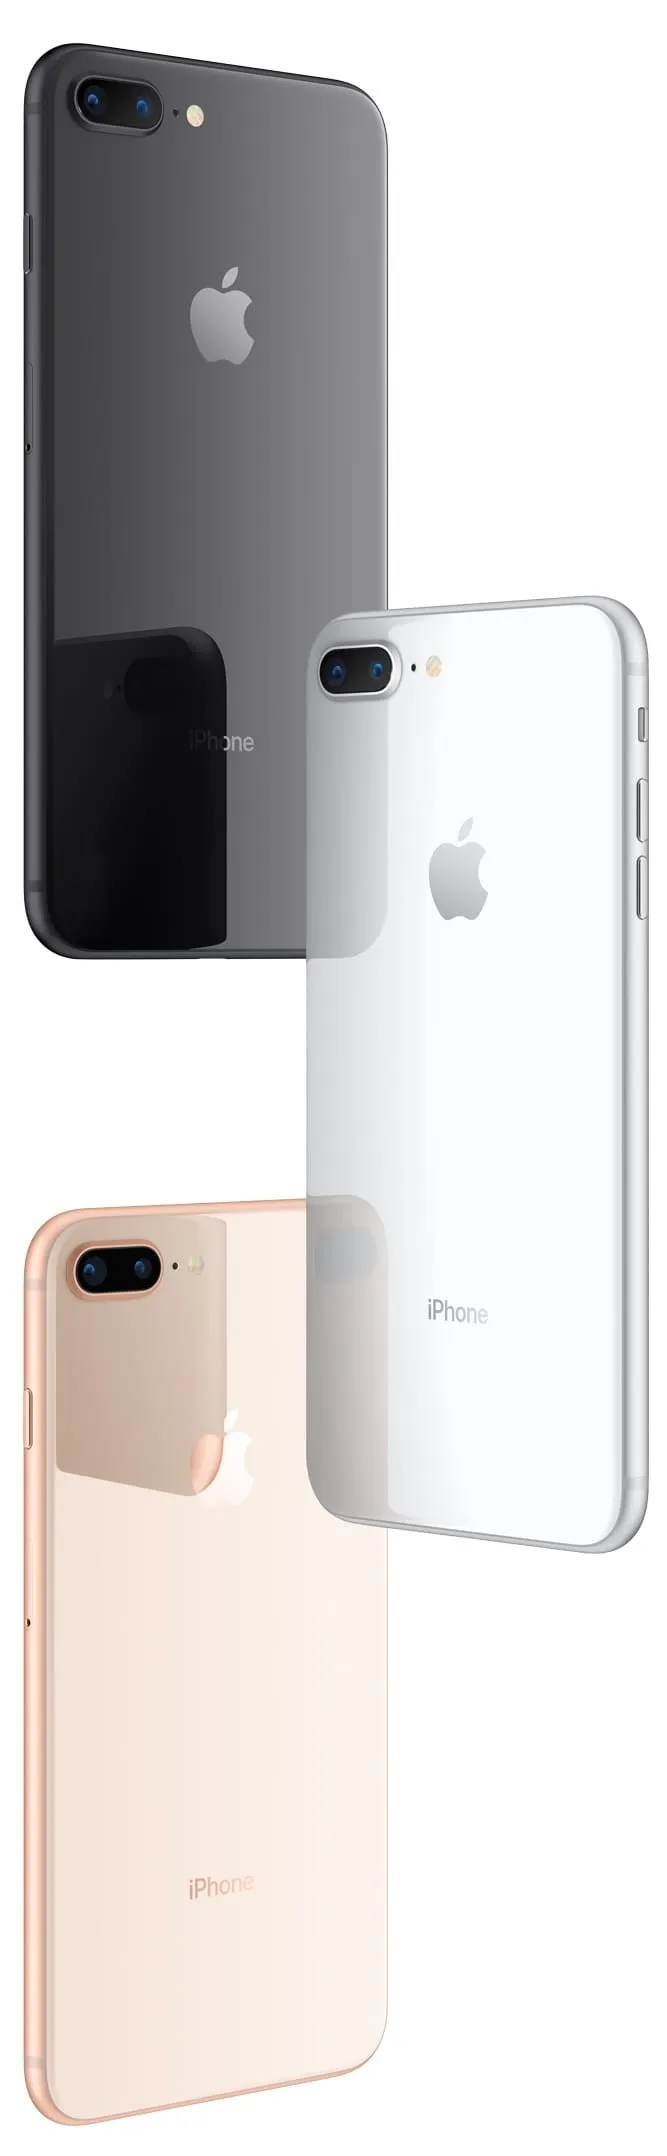 iPhone 8 и iPhone 8 Plus дизайн